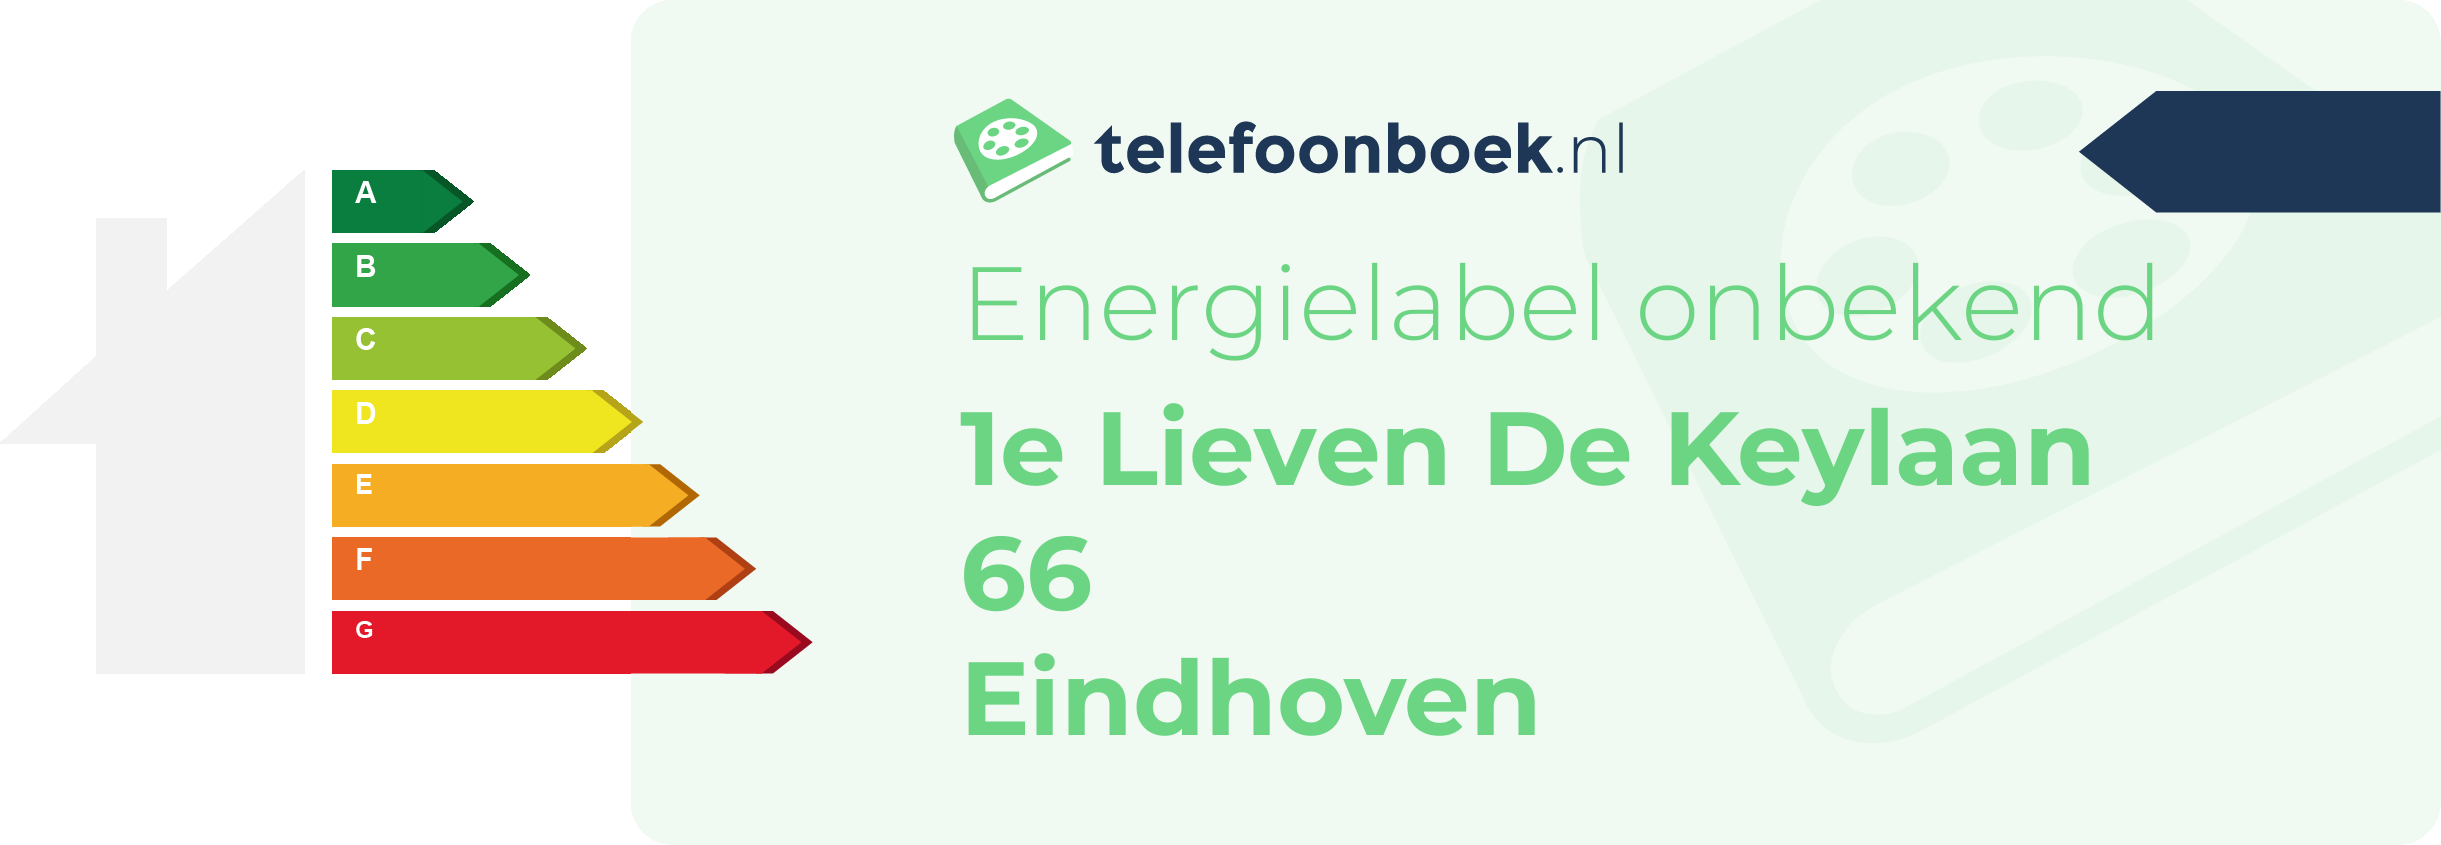 Energielabel 1e Lieven De Keylaan 66 Eindhoven